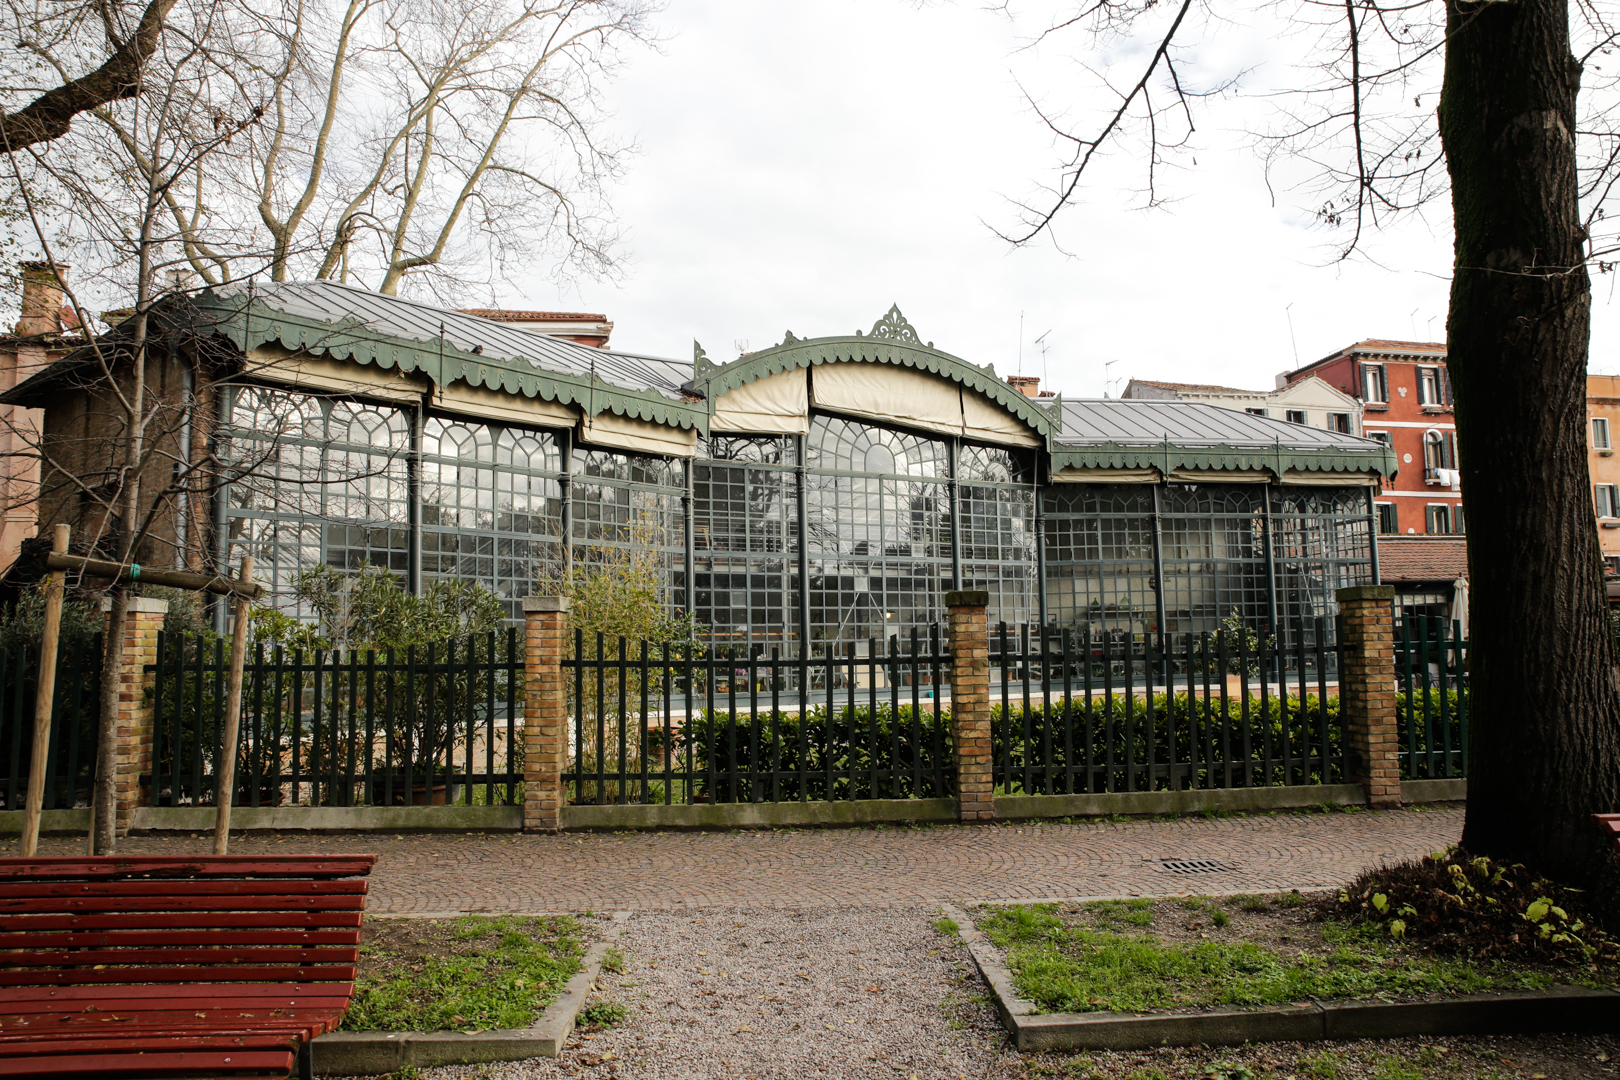 Edificata nel 1894 per ospitare le piante dell'Esposizione Internazionale dell'Arte, oggi la Serra dei Giardini di Venezia è un caffè botanico